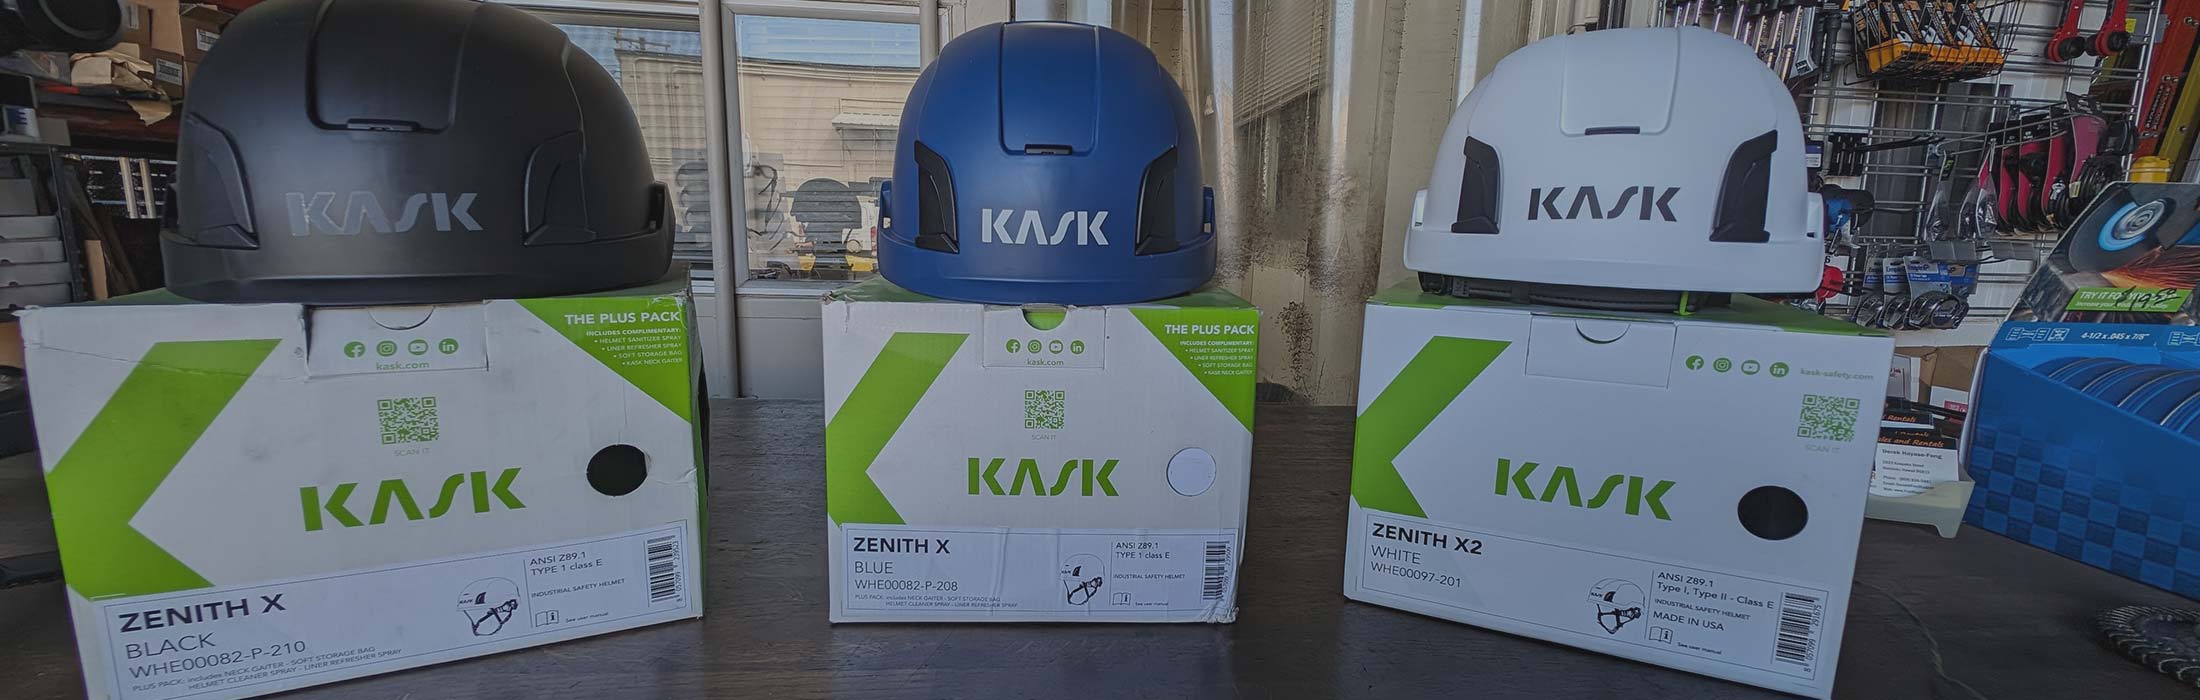 image of Kask safery helmets at Fred Rader